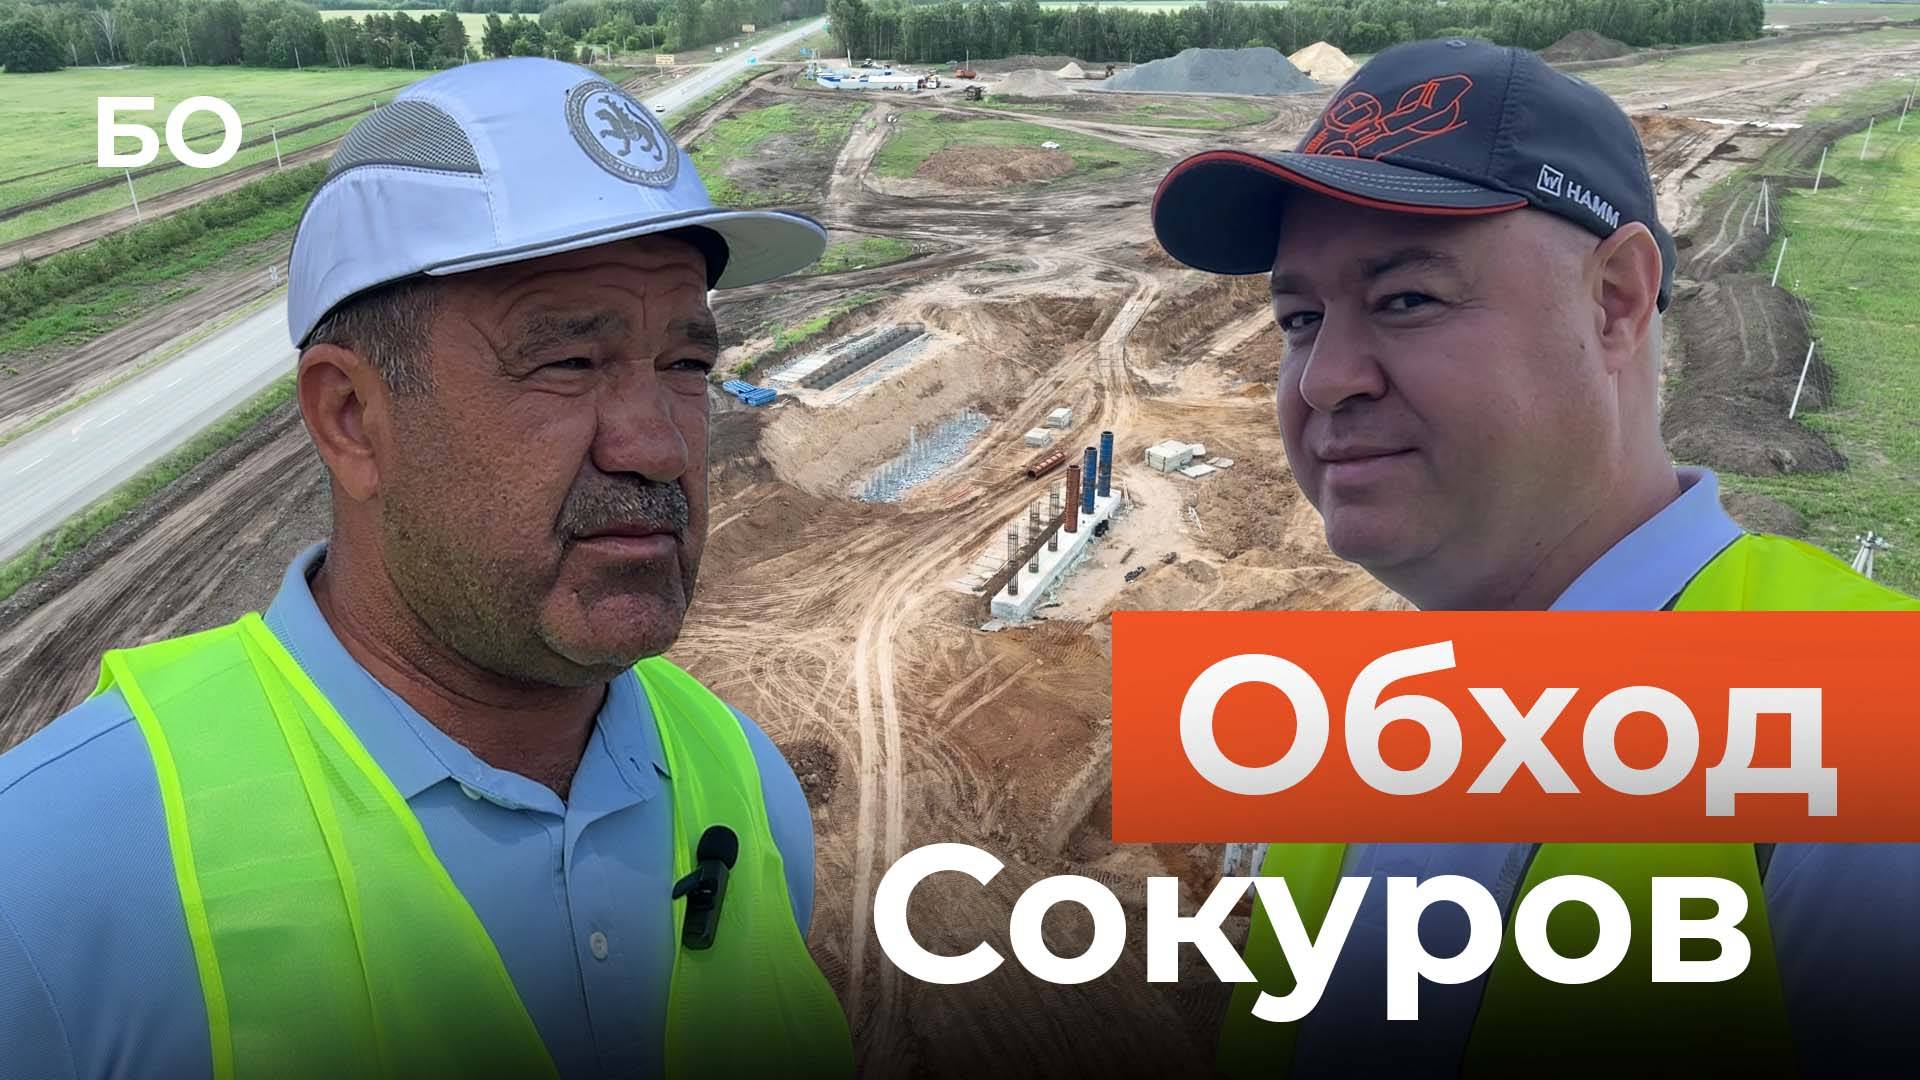 Как идет строительство федеральной трассы Р-239 «Казань-Оренбург» и обхода села Сокуры